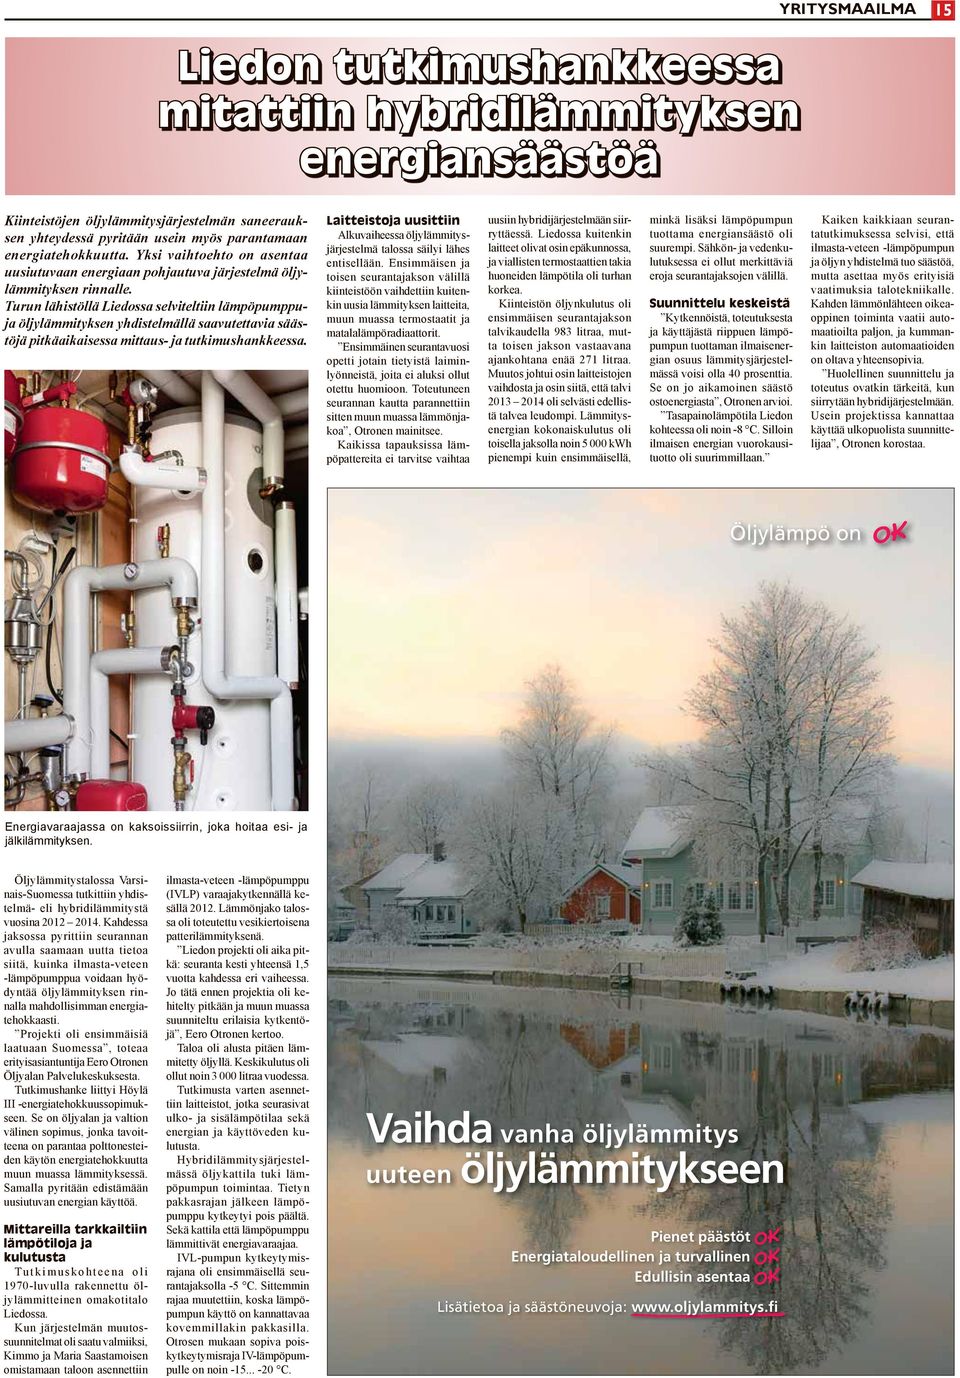 Turun lähistöllä Liedossa selviteltiin lämpöpumppuja öljylämmityksen yhdistelmällä saavutettavia säästöjä pitkäaikaisessa mittaus- ja tutkimushankkeessa.